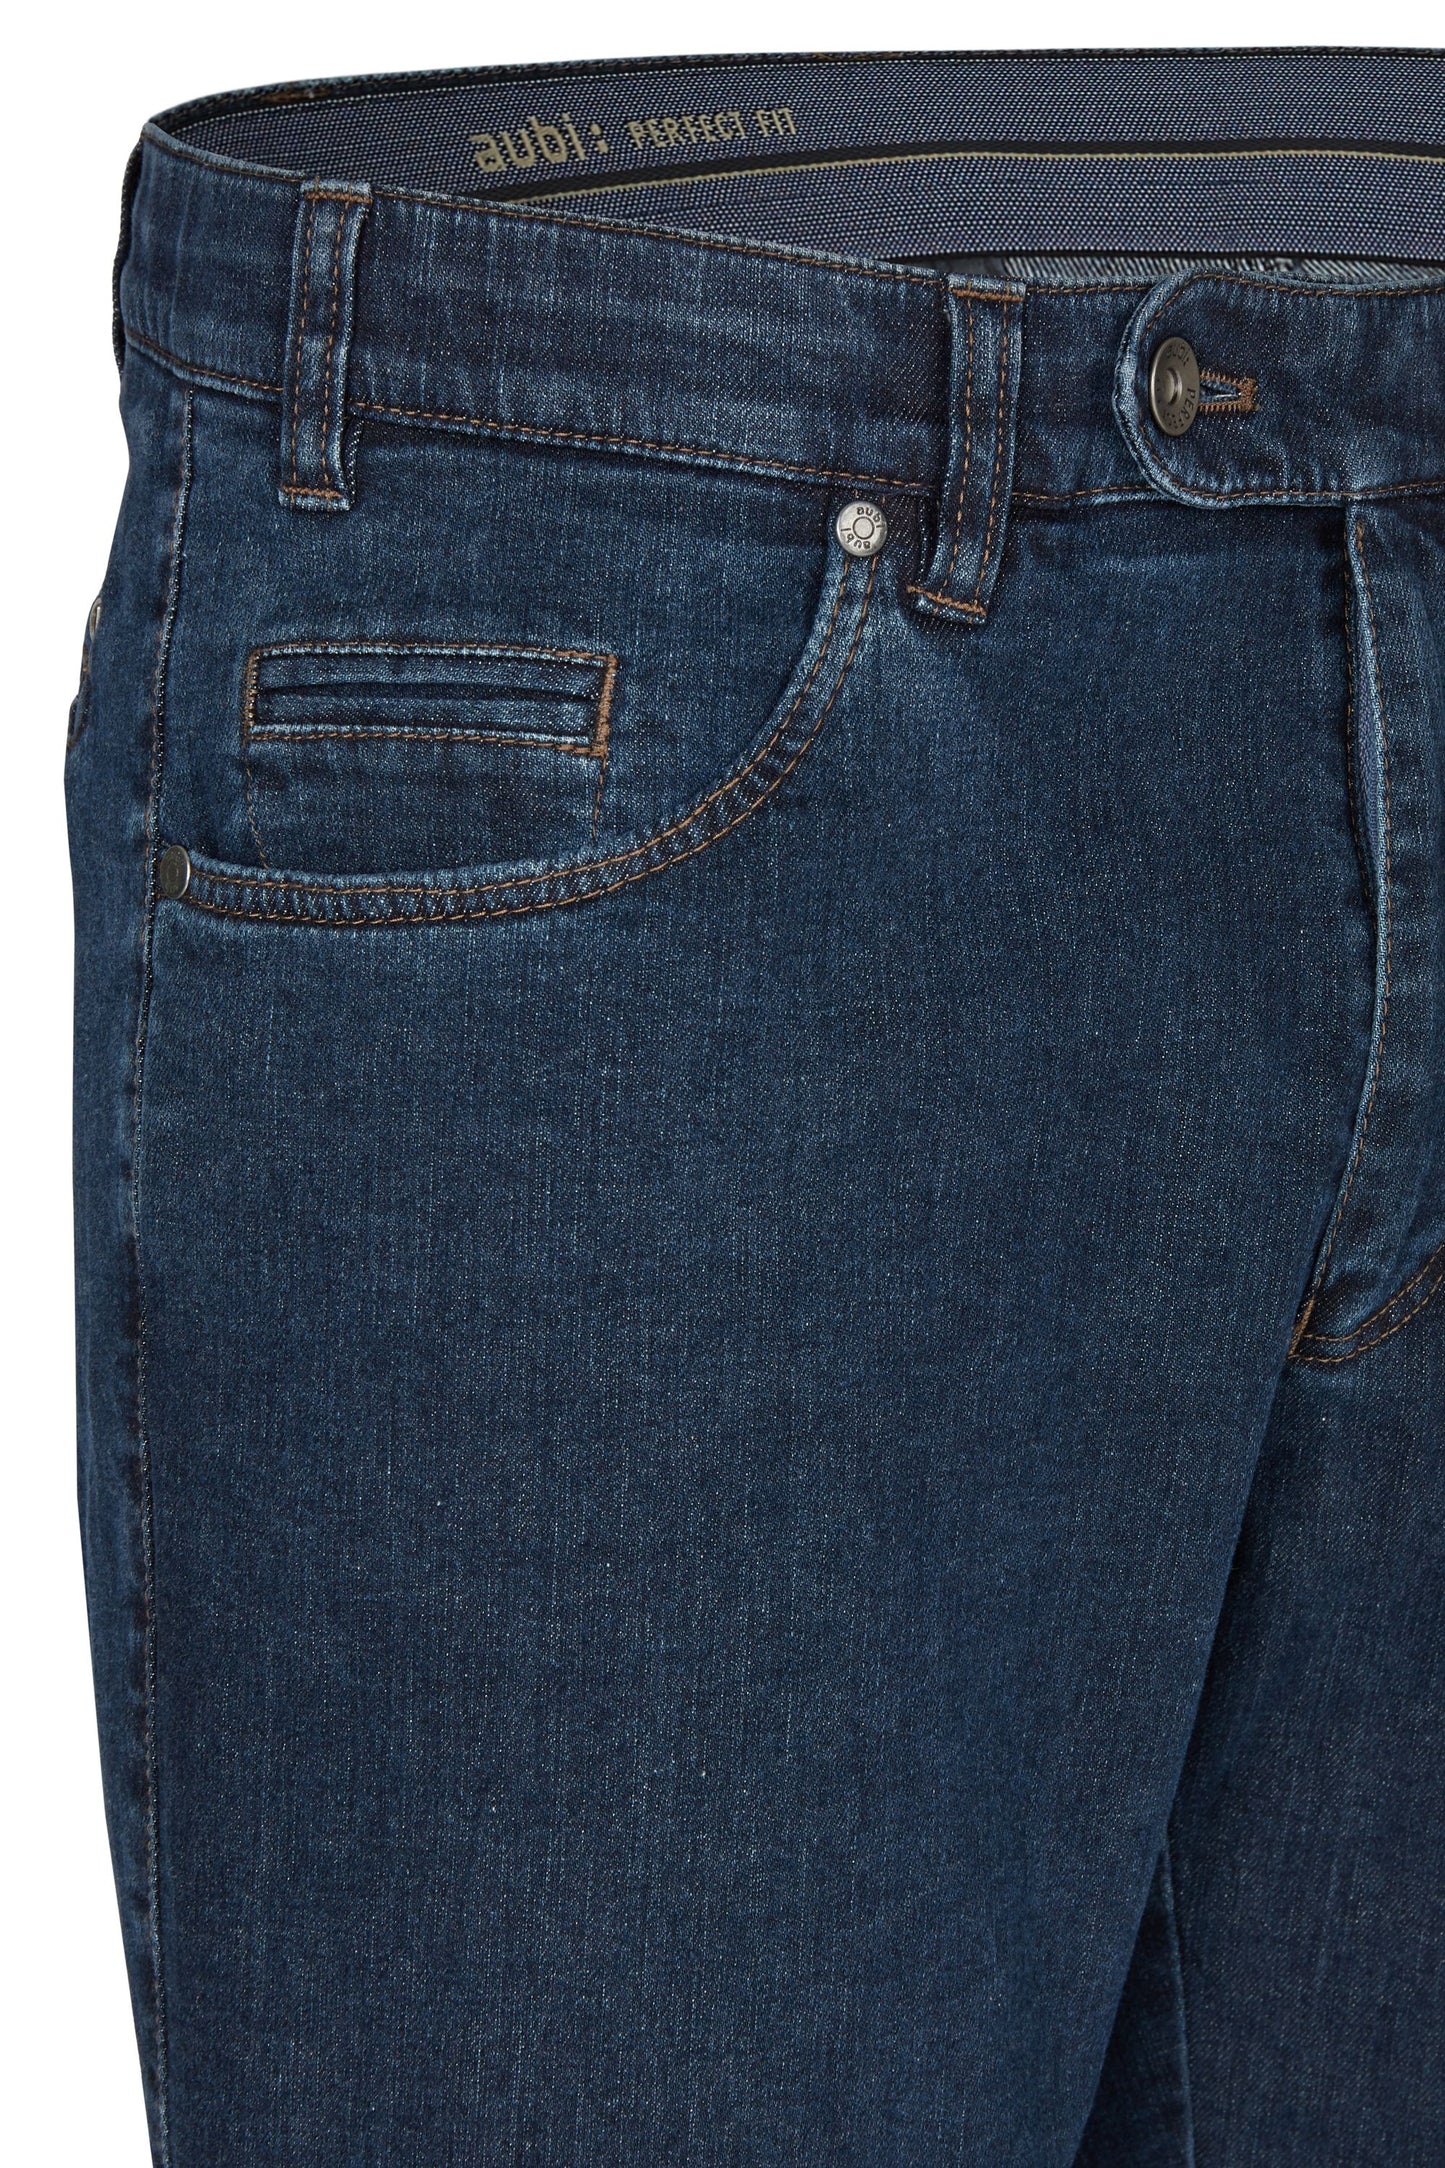 aubi Perfect Fit Herren Jeans Hose Stretch aus Baumwolle High Flex Modell 577